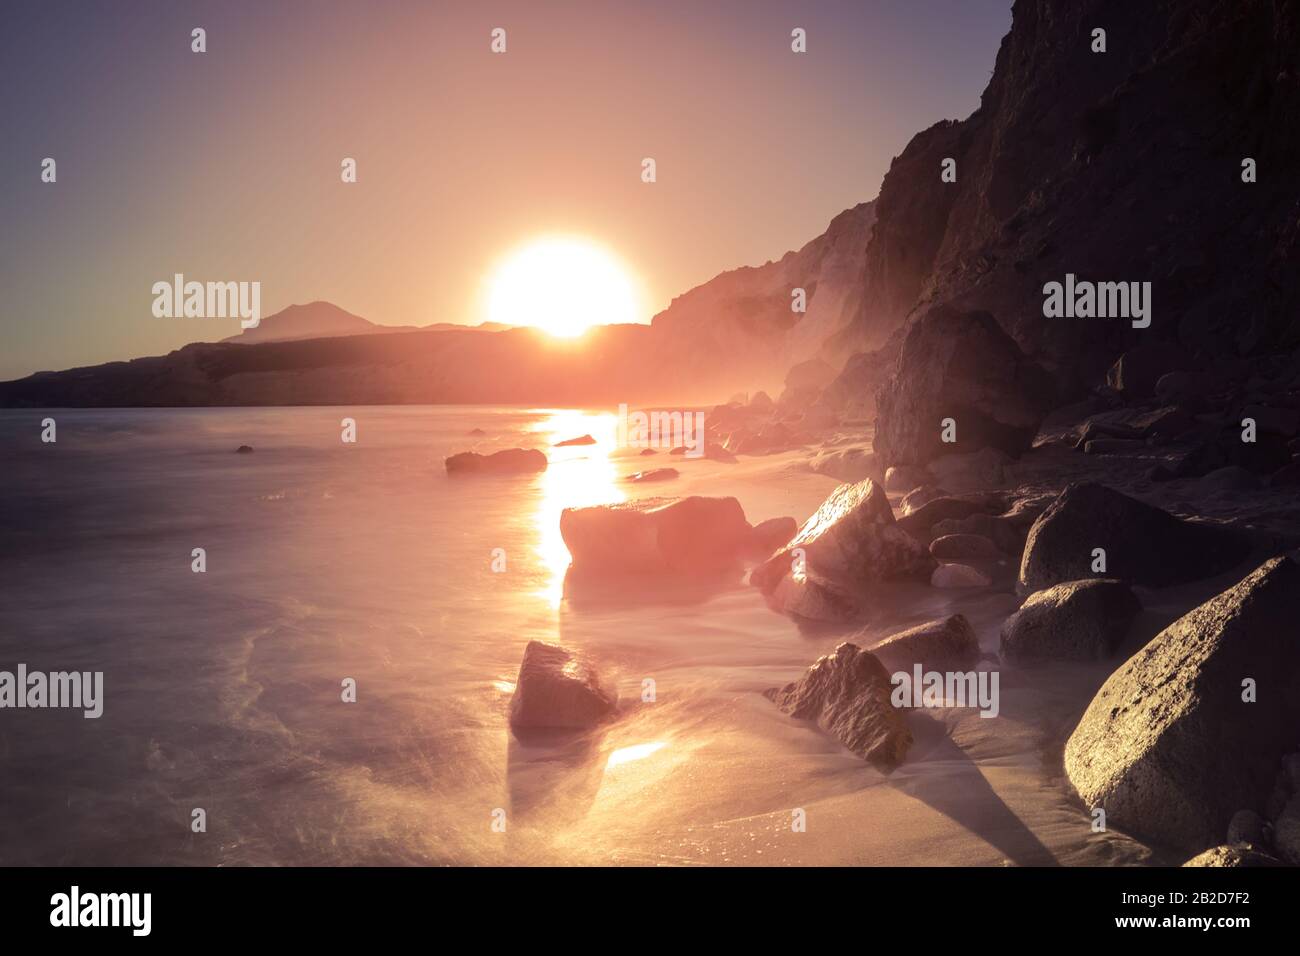 Fantastischer Sonnenuntergang auf der Insel Milos. Sandiger Strand und sanfte Meeresbrandung in der ägeischen Meere. Große Steinfelsen im Wasser. Ruhiger Abend mediterrane Landschaft auf den Kykladen I Stockfoto